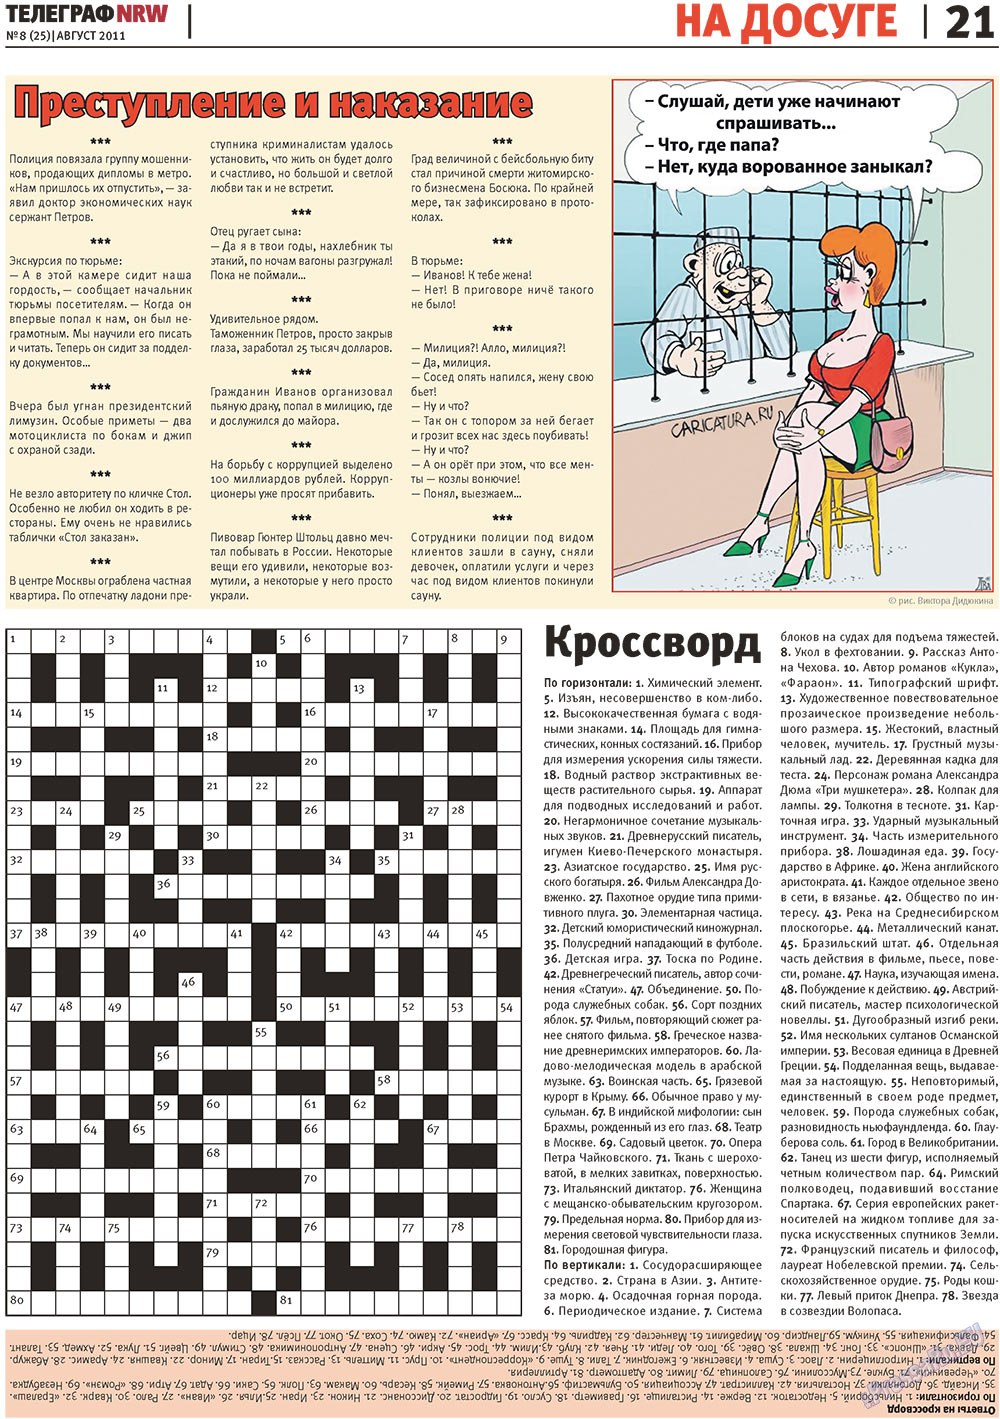 Телеграф NRW (газета). 2011 год, номер 8, стр. 21